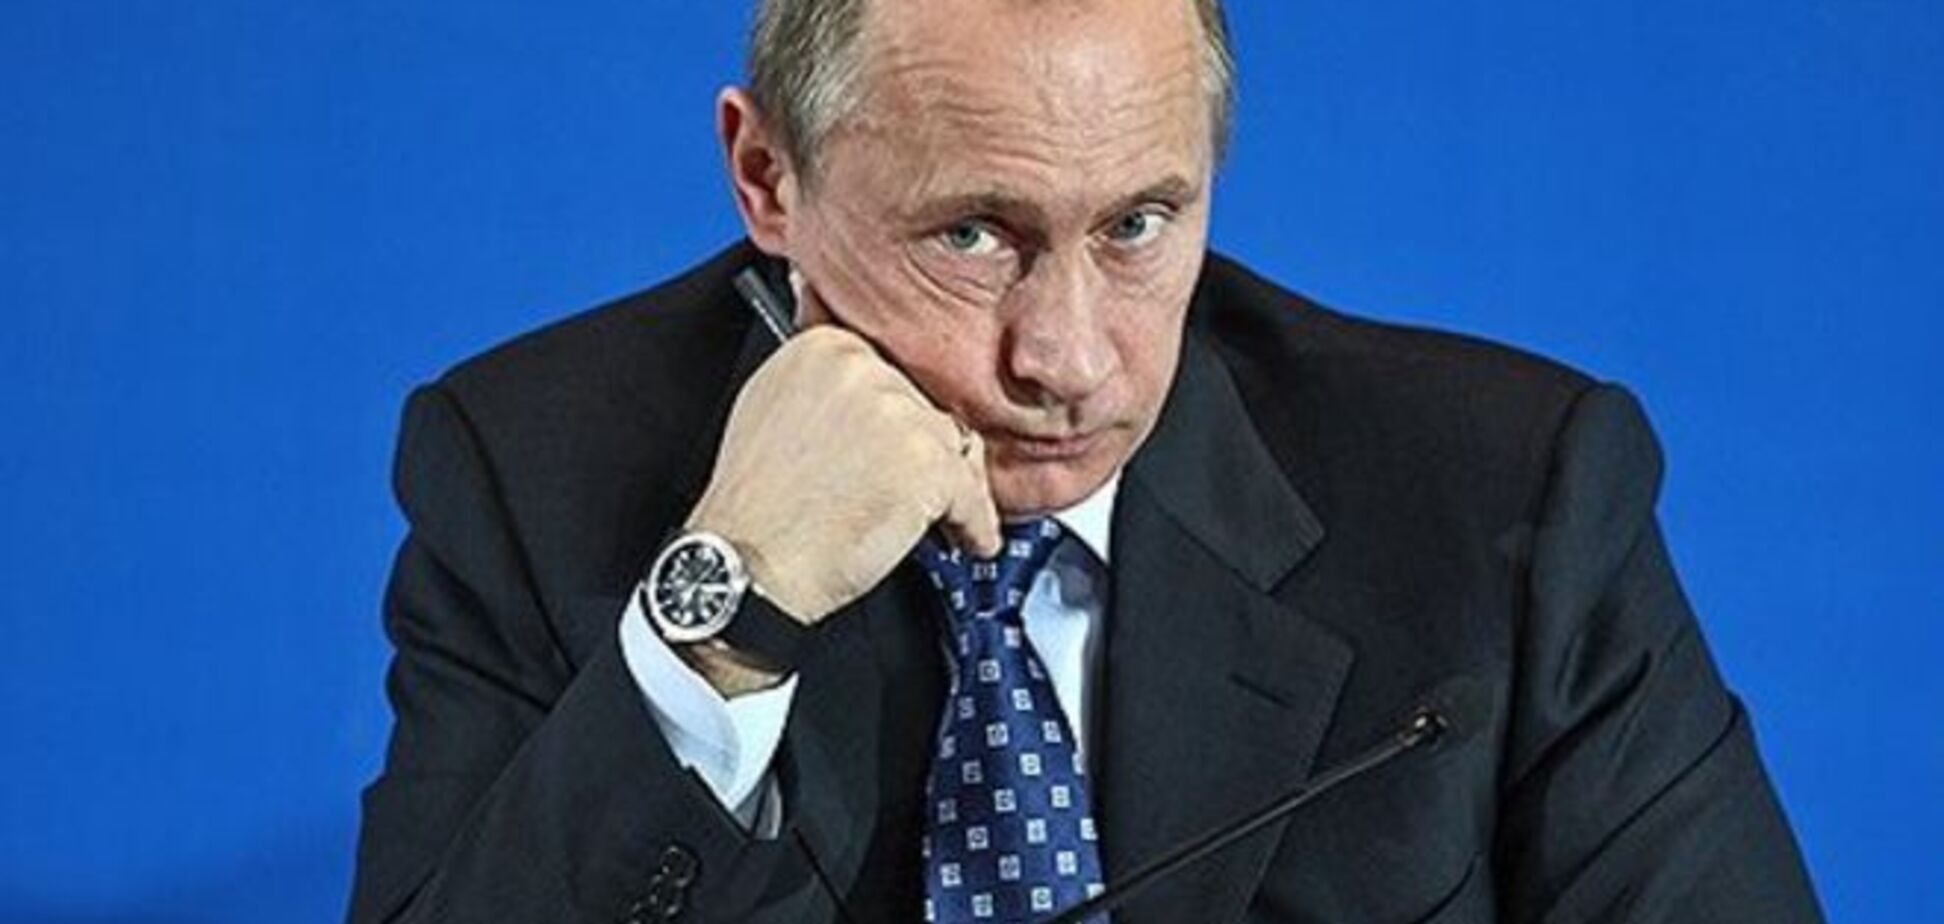 Путин признался, что ему не по душе работа президента: никакой нормальной жизни 